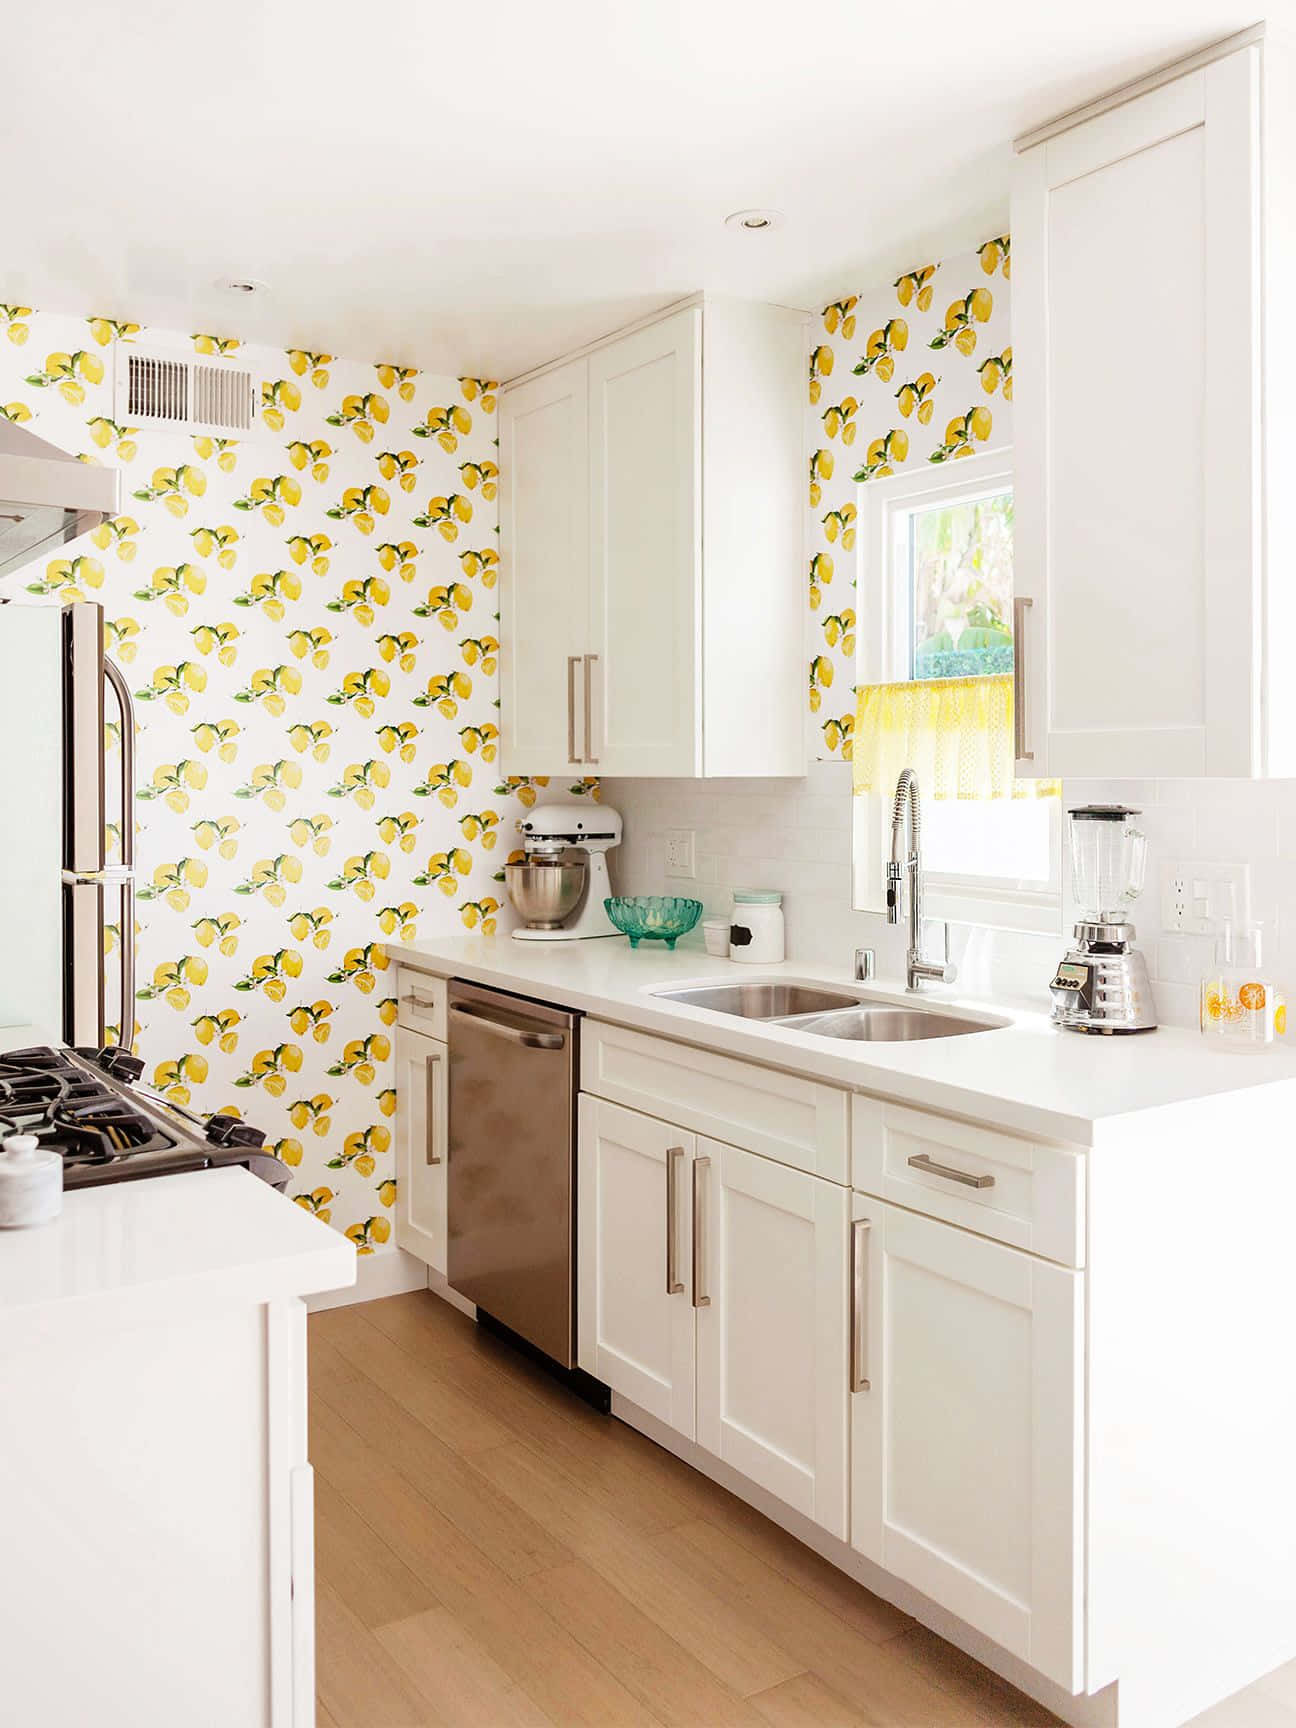 Eineküche Mit Gelber Und Weißer Tapete Wallpaper